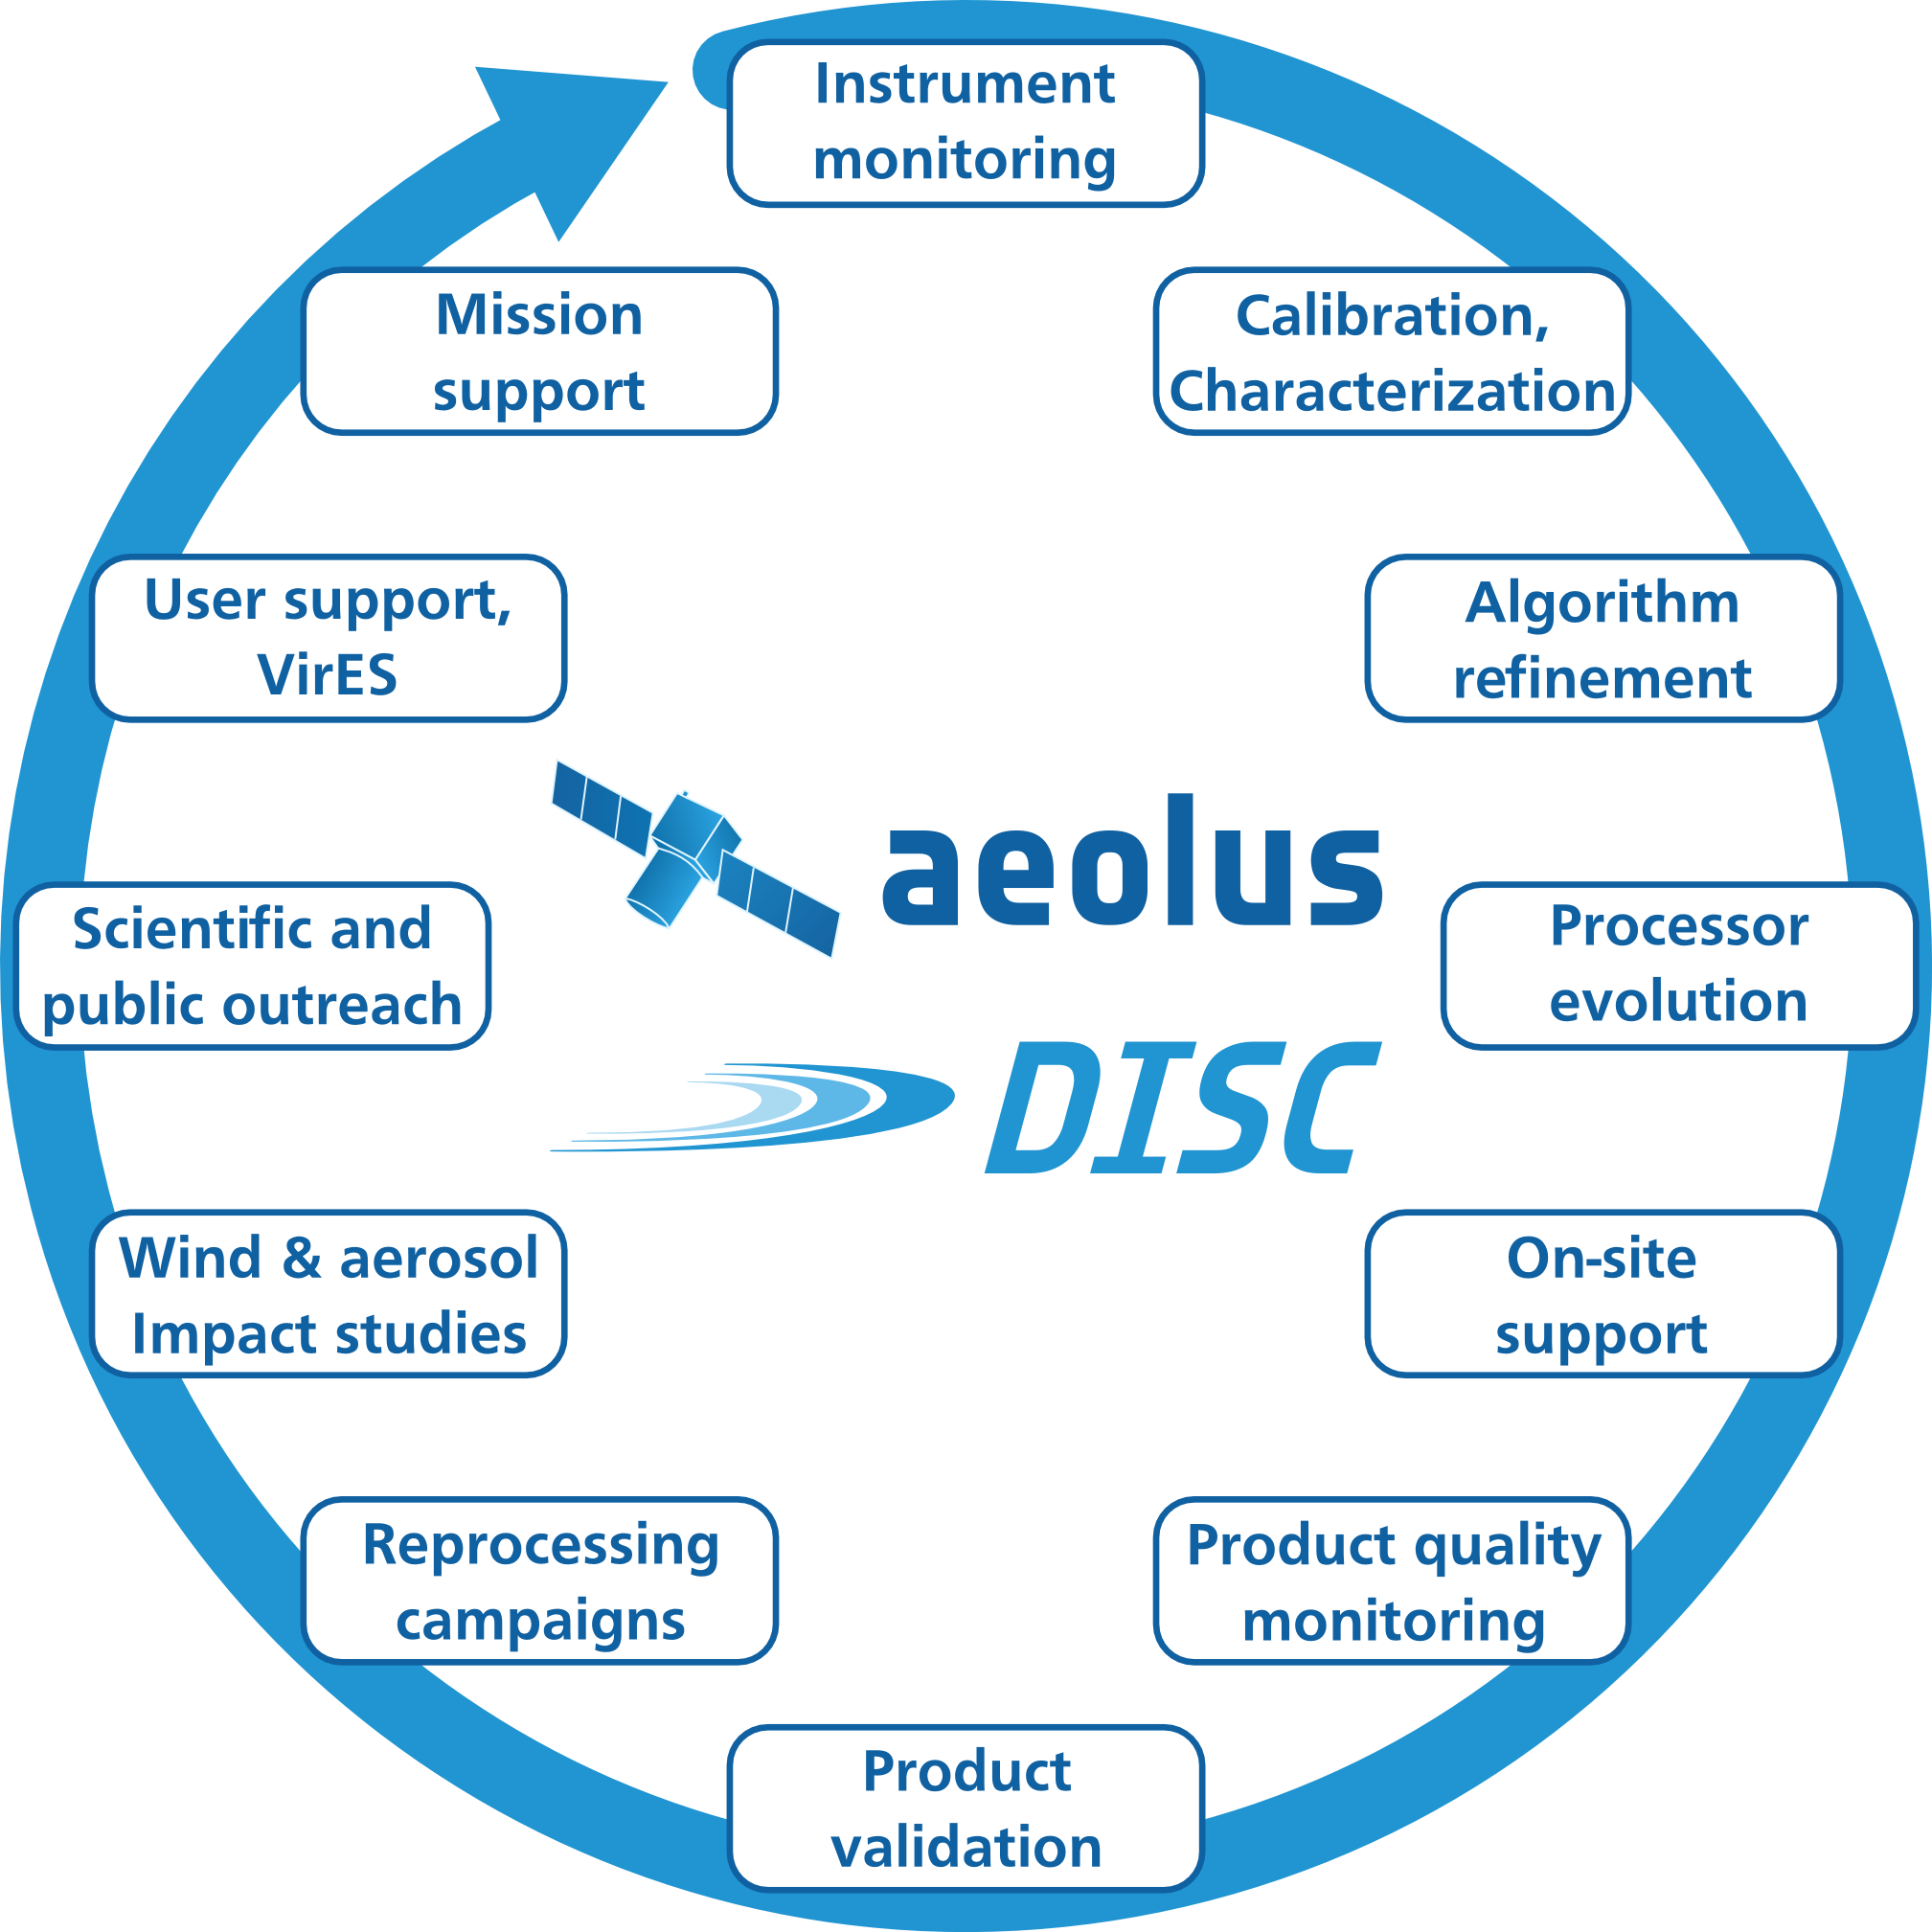 Aeolus DISC tasks